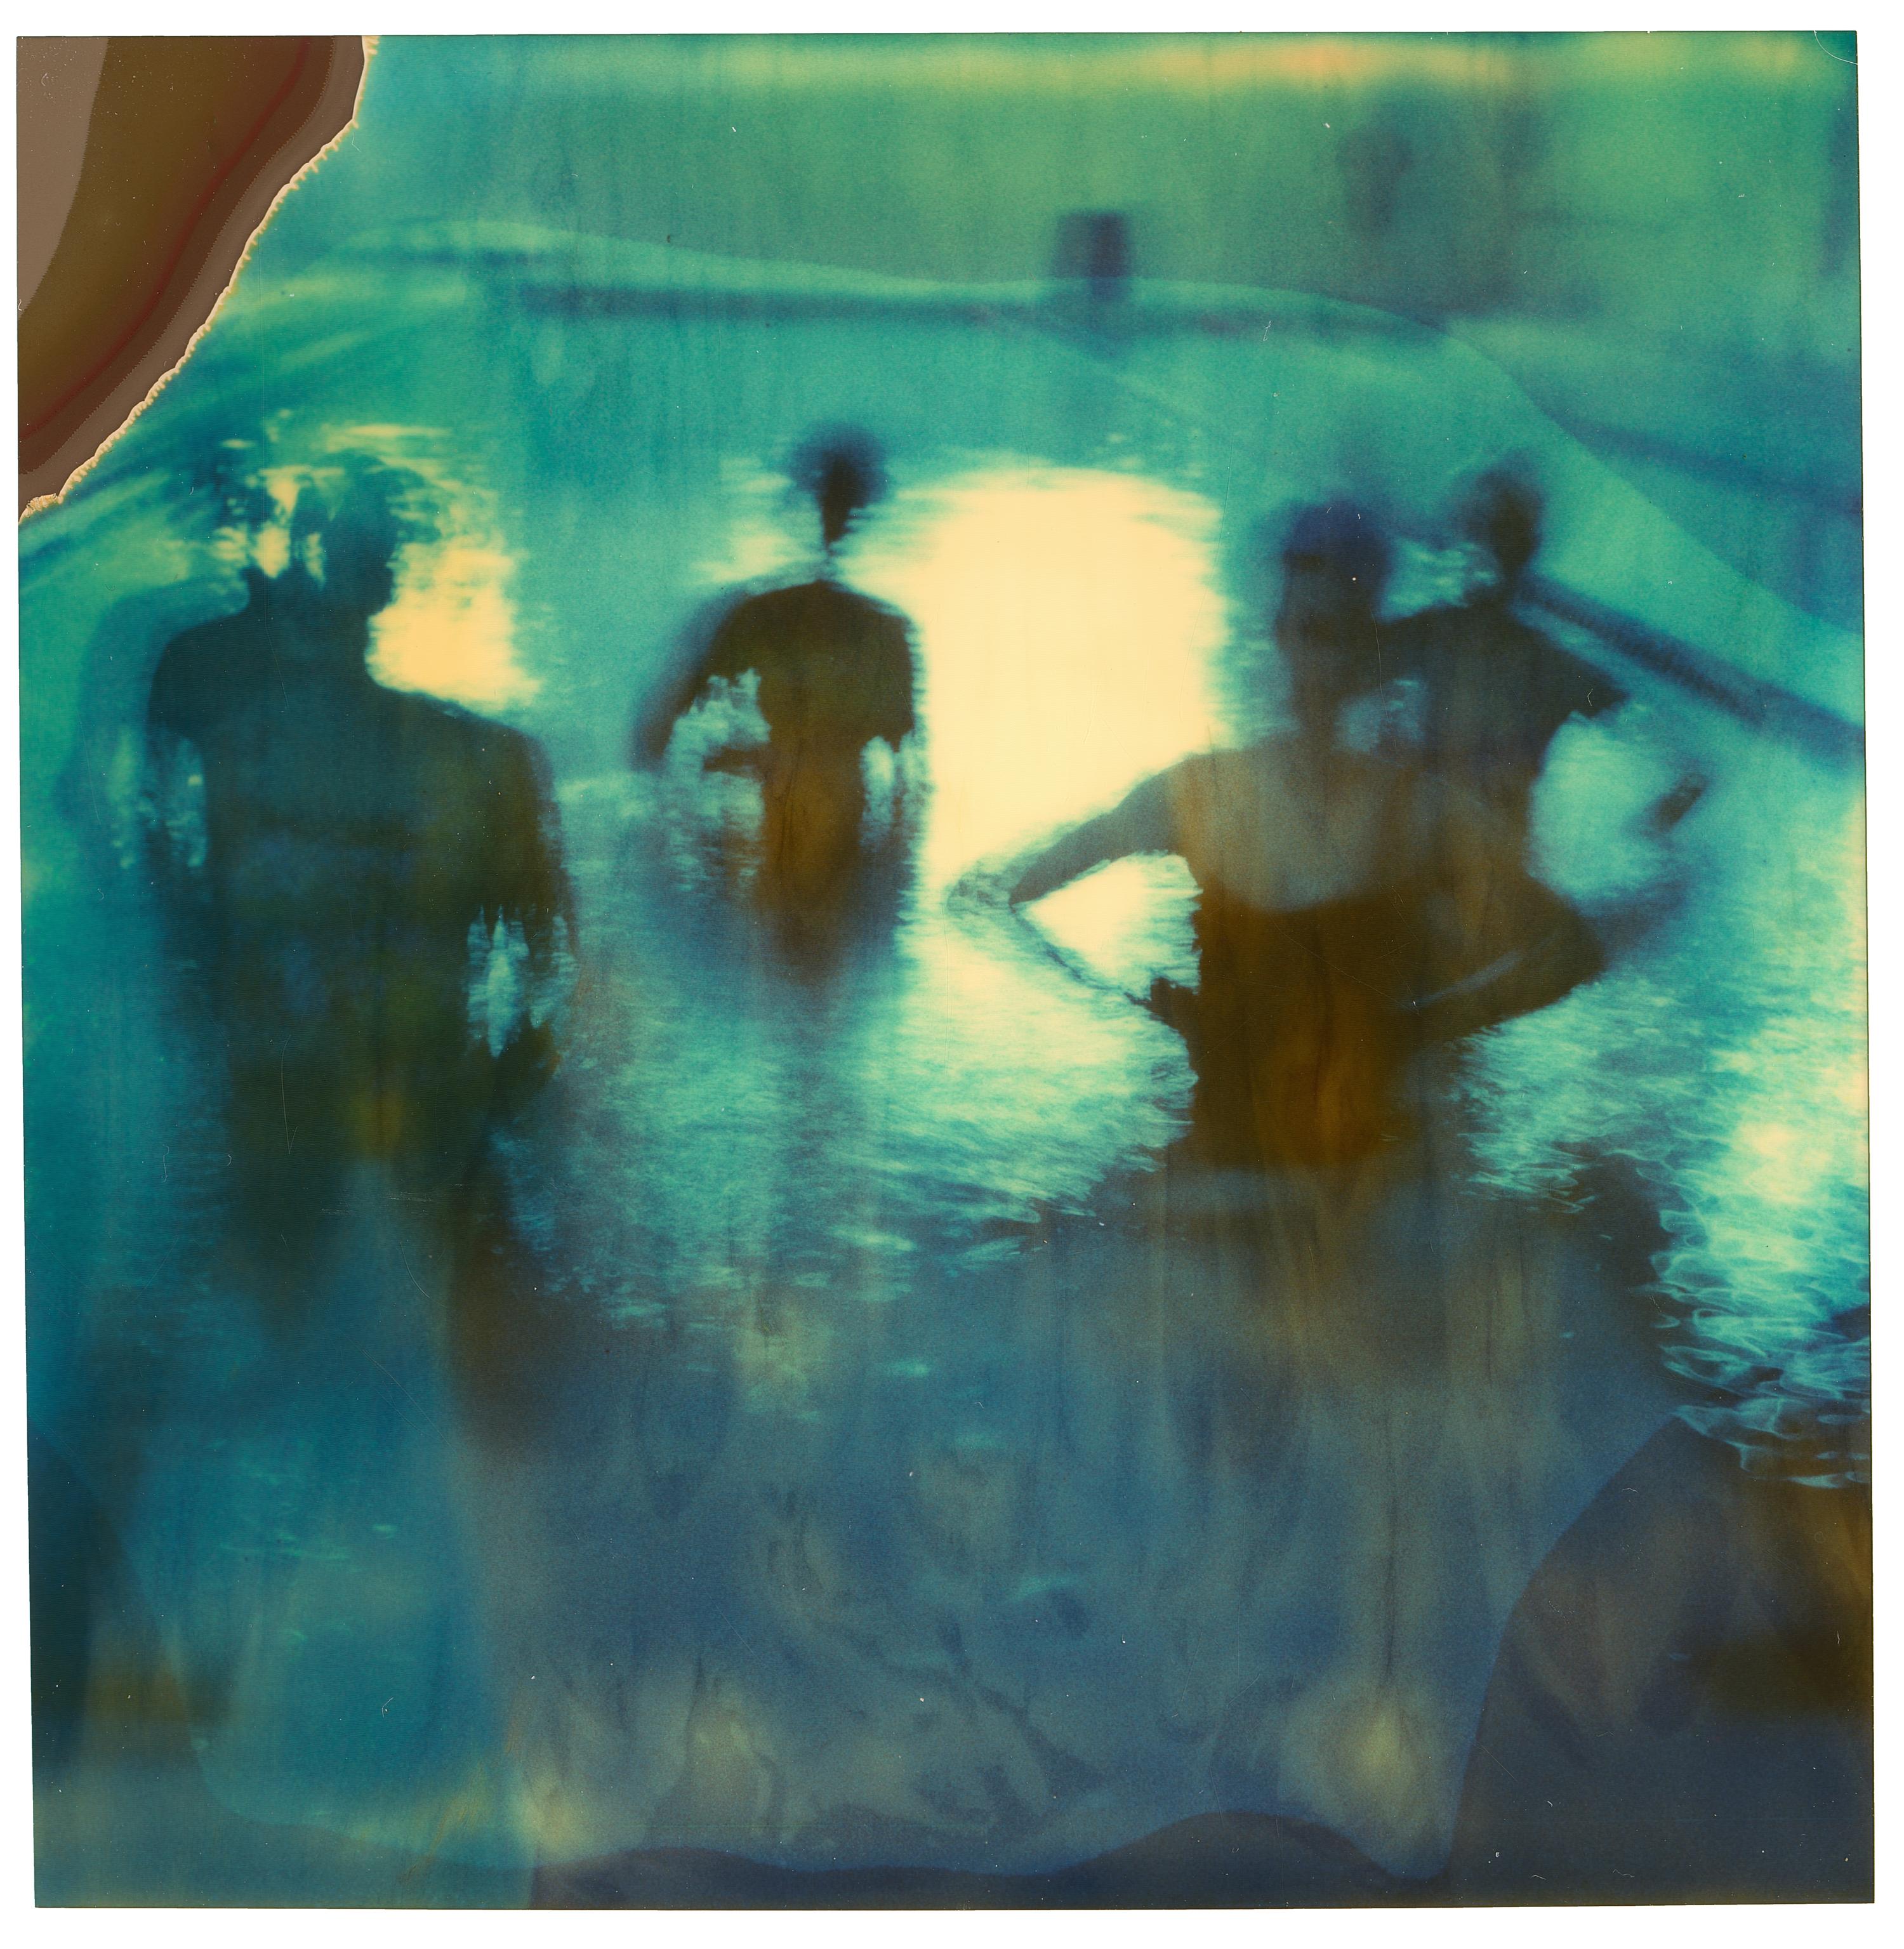 Exercise (Suburbia) - Contemporary, Polaroid, Women, Pool